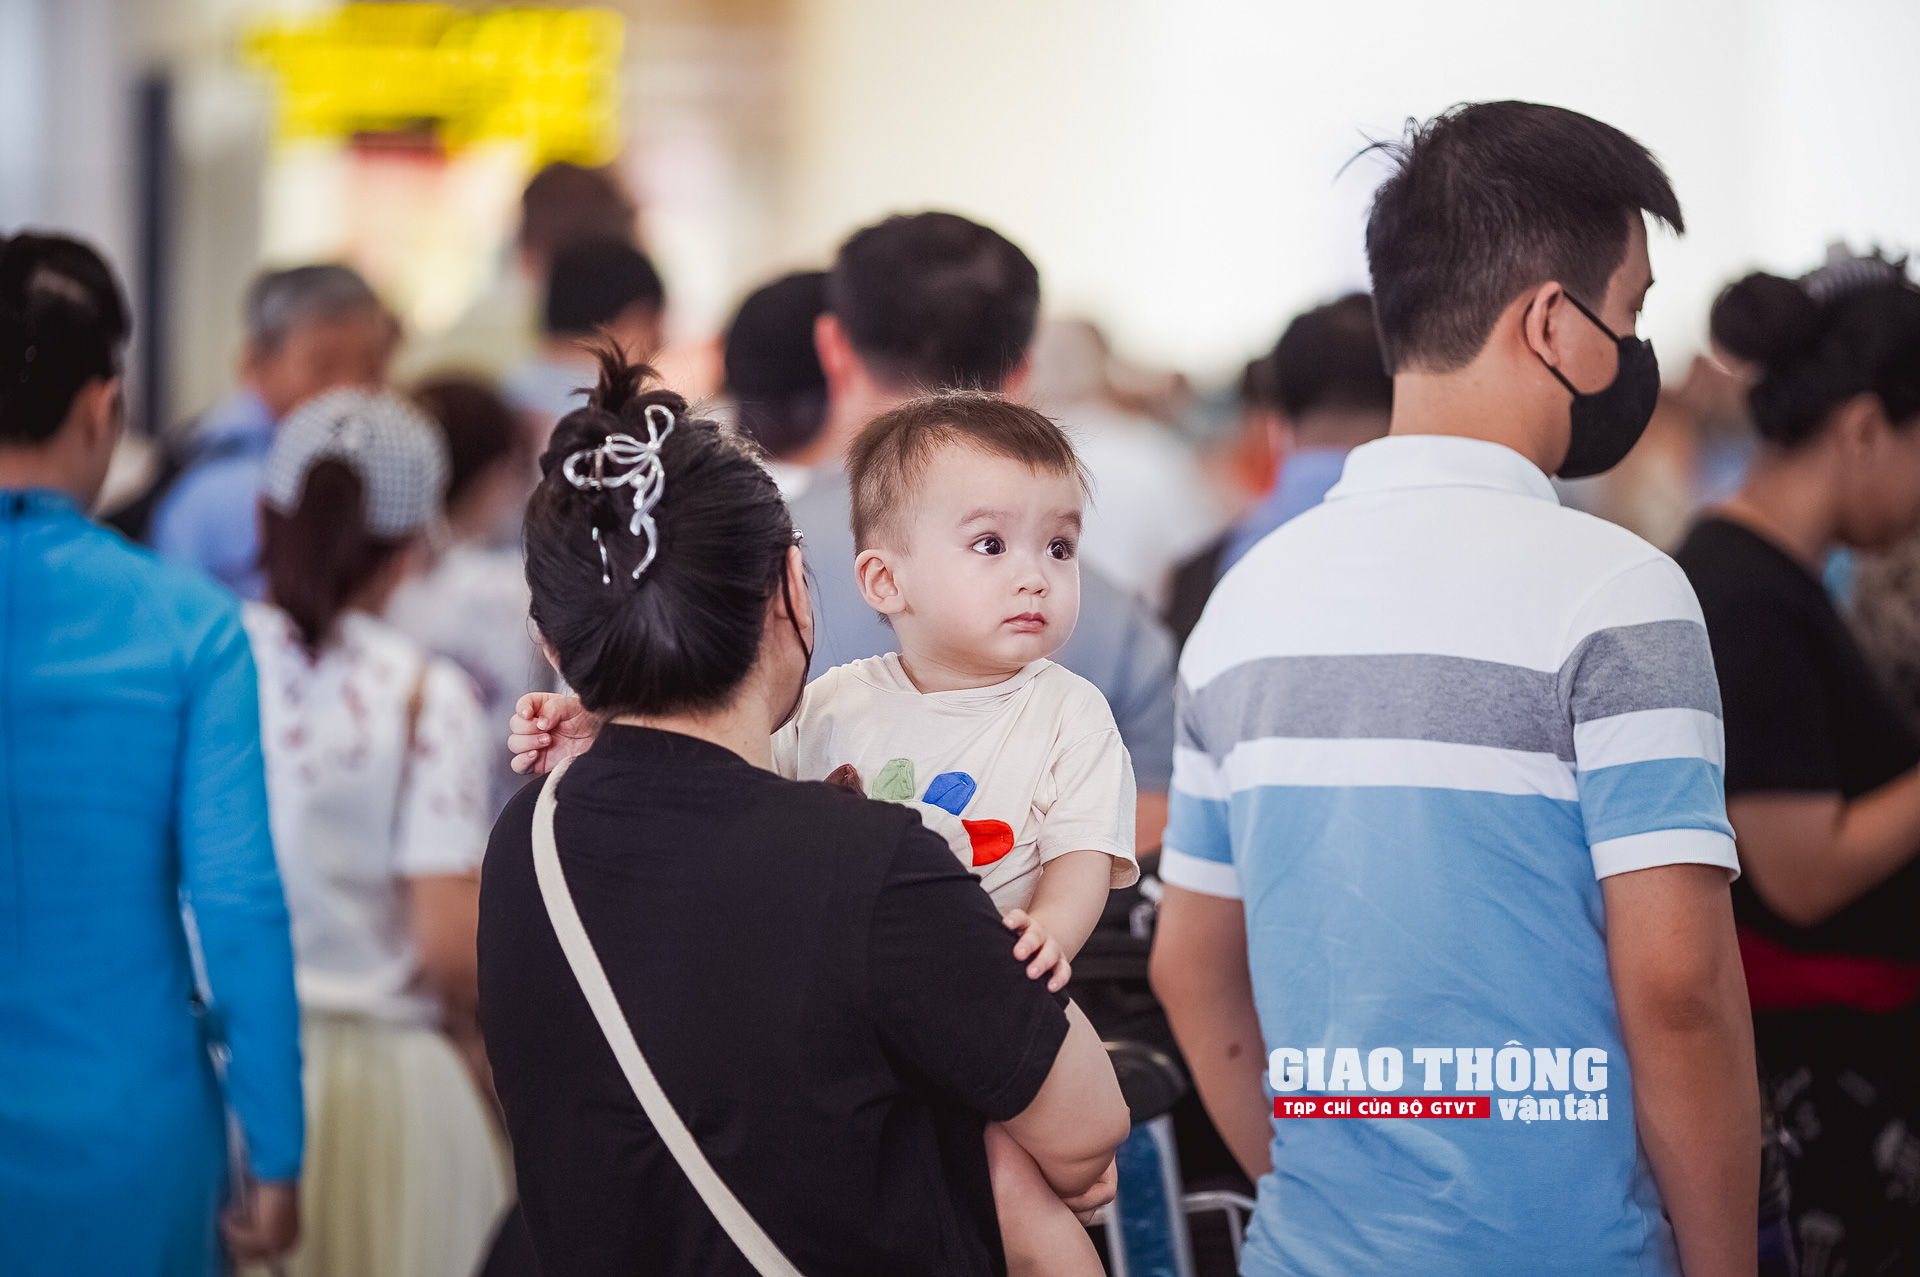 Cận cảnh ngày cao điểm nhất tại sân bay Nội Bài dịp nghỉ Lễ 30/4 - 1/5- Ảnh 7.